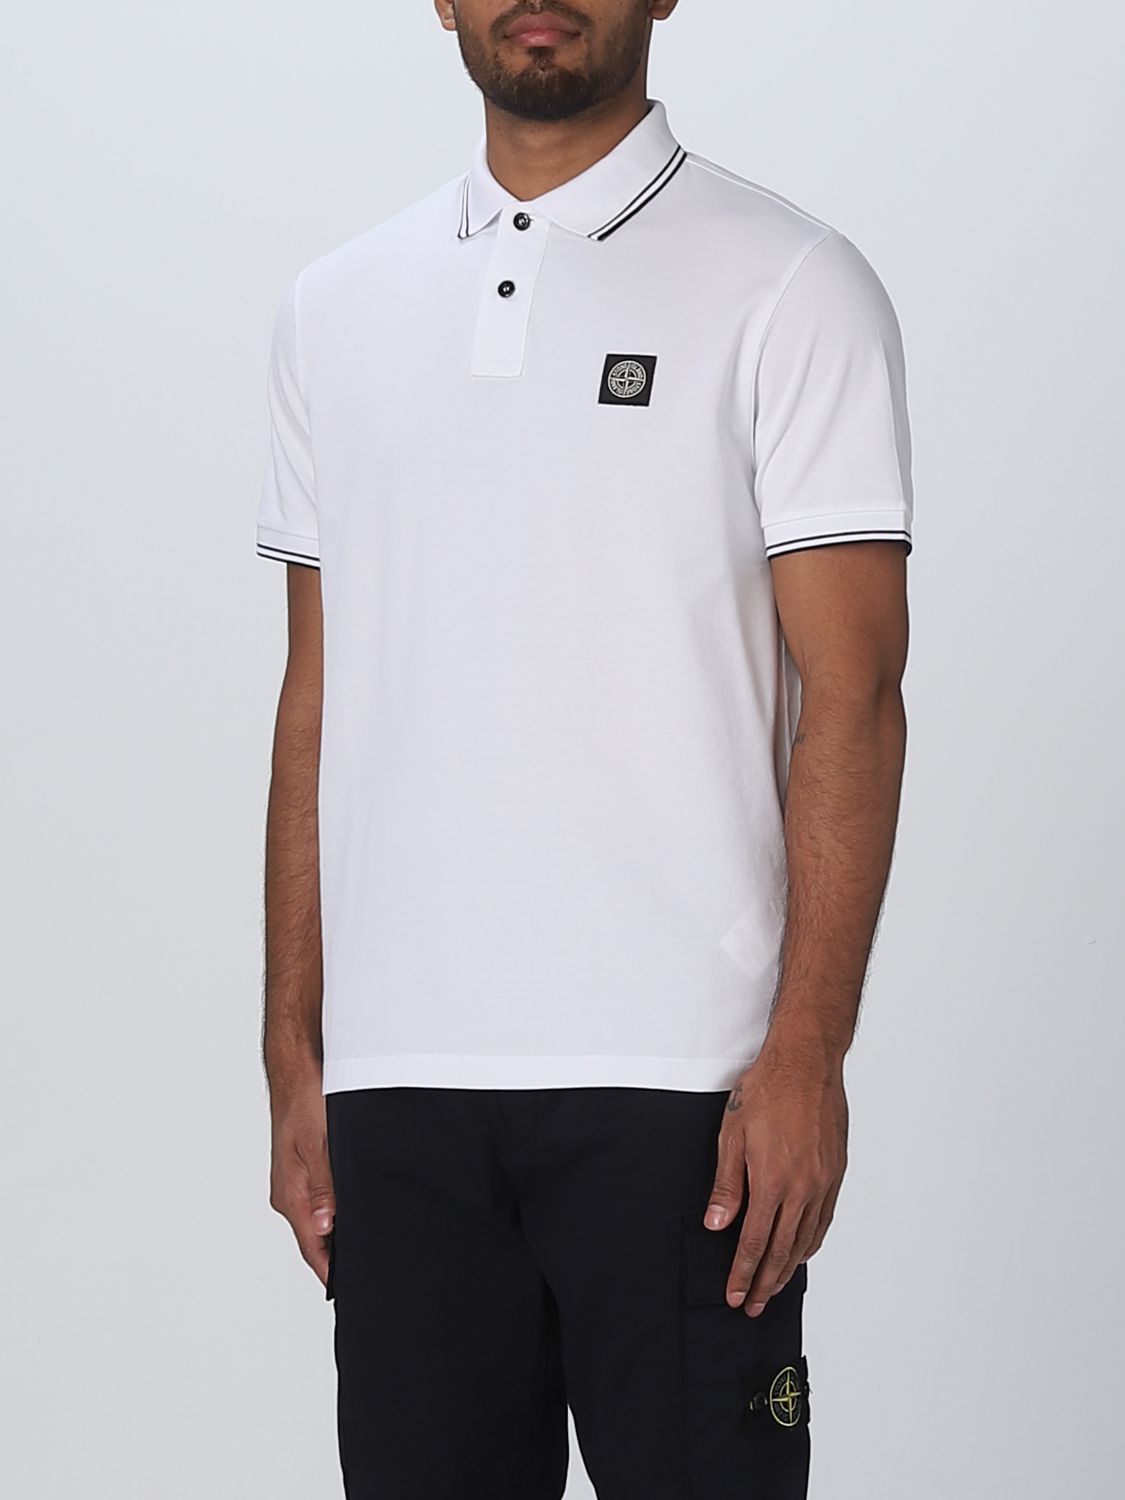 Koel Behandeling eer STONE ISLAND: polo shirt for man - White | Stone Island polo shirt  10152SC18 online on GIGLIO.COM